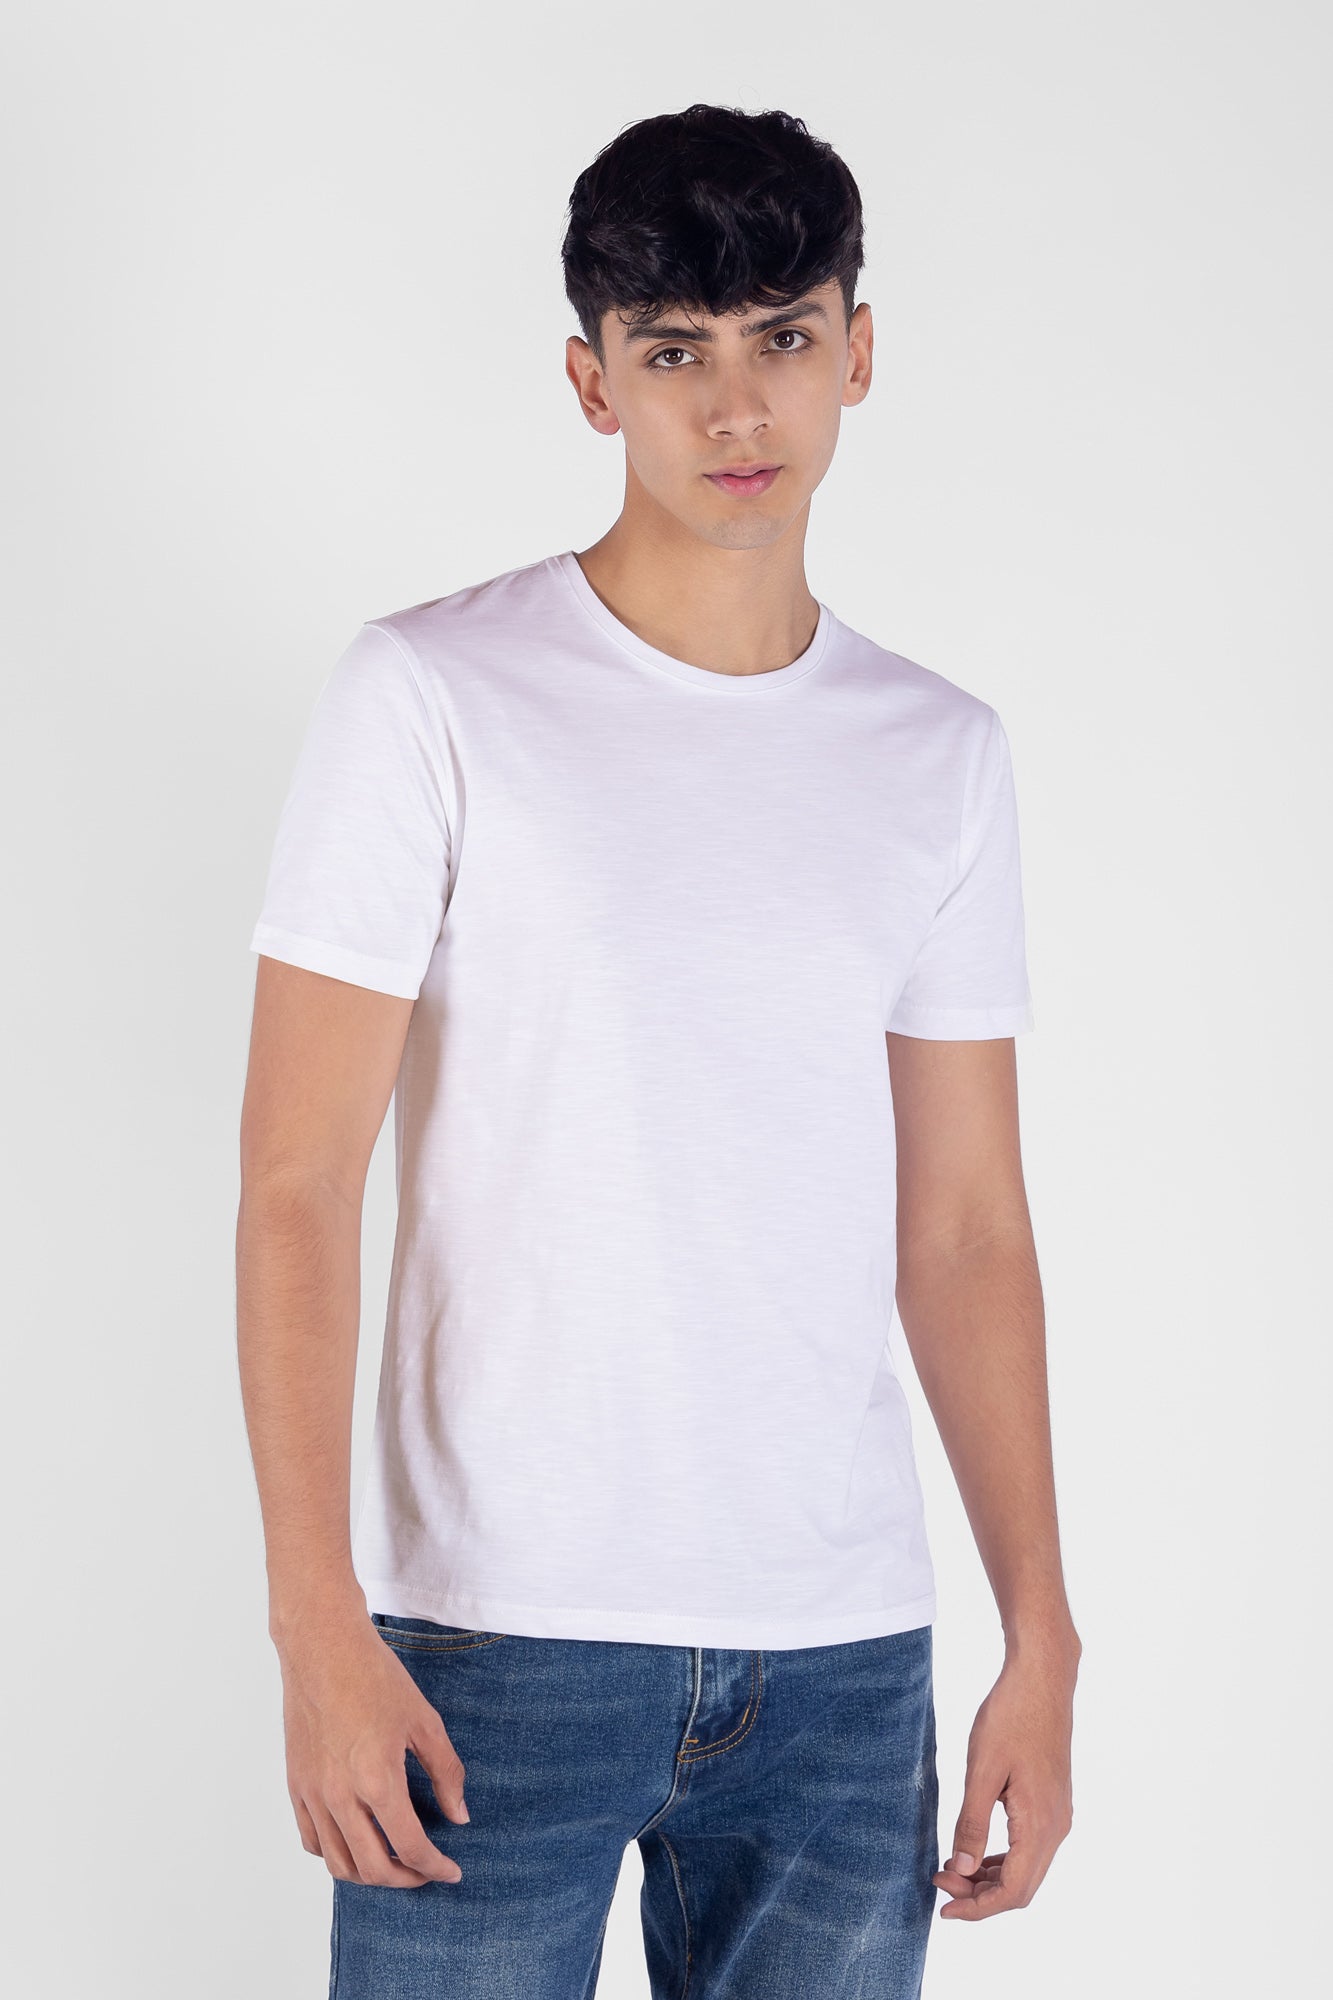 Camiseta Básica Color Blanco Para Hombre